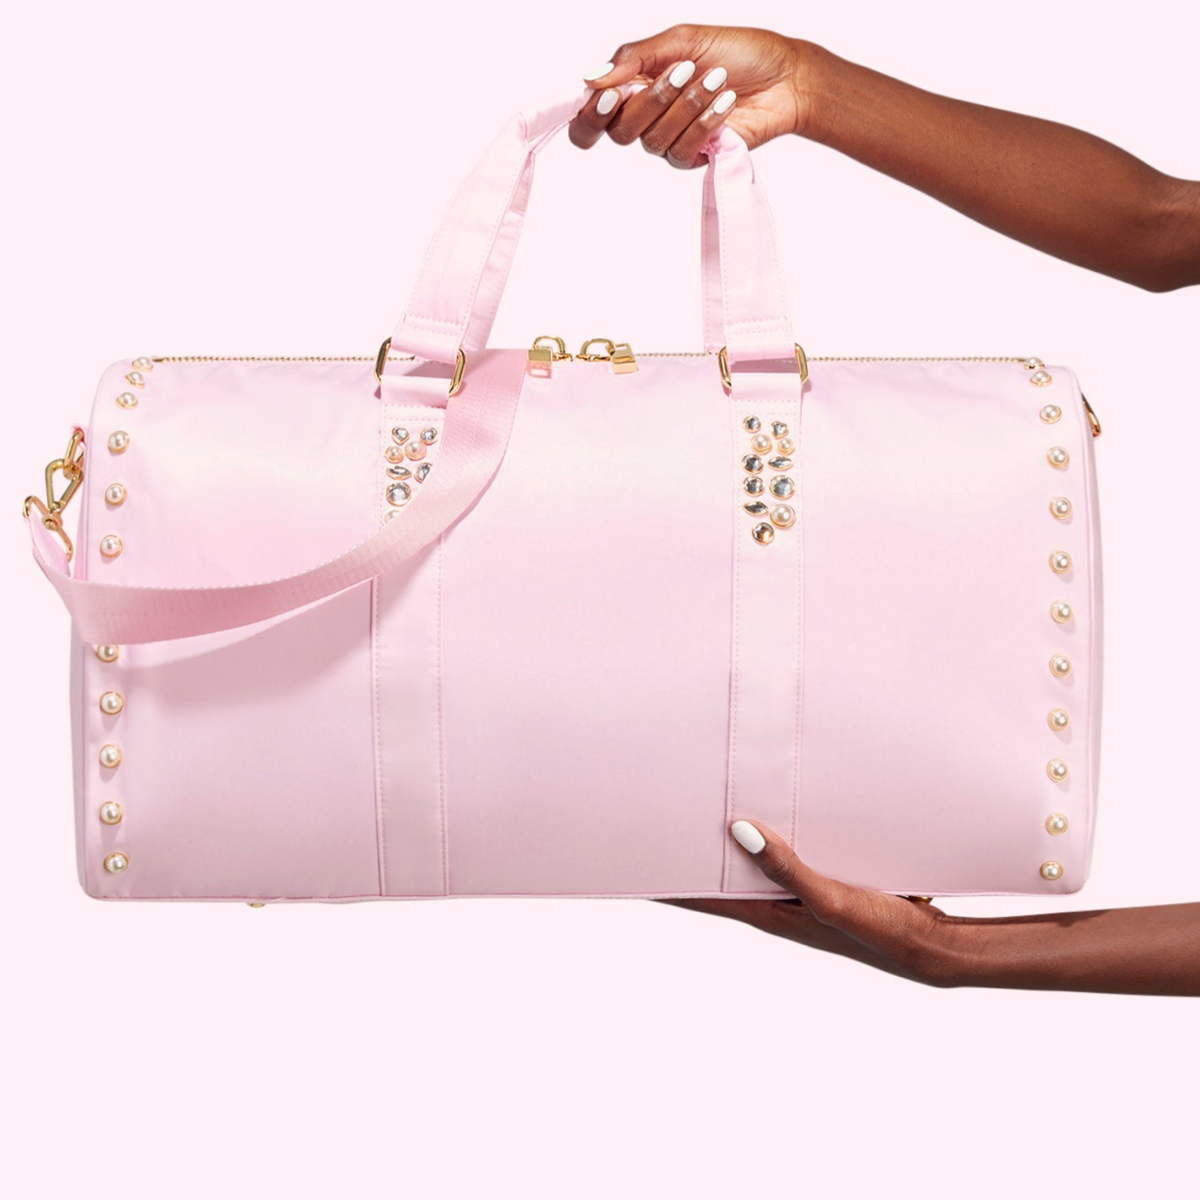 Nylon Pink 19 - 22 Size Travel Luggage